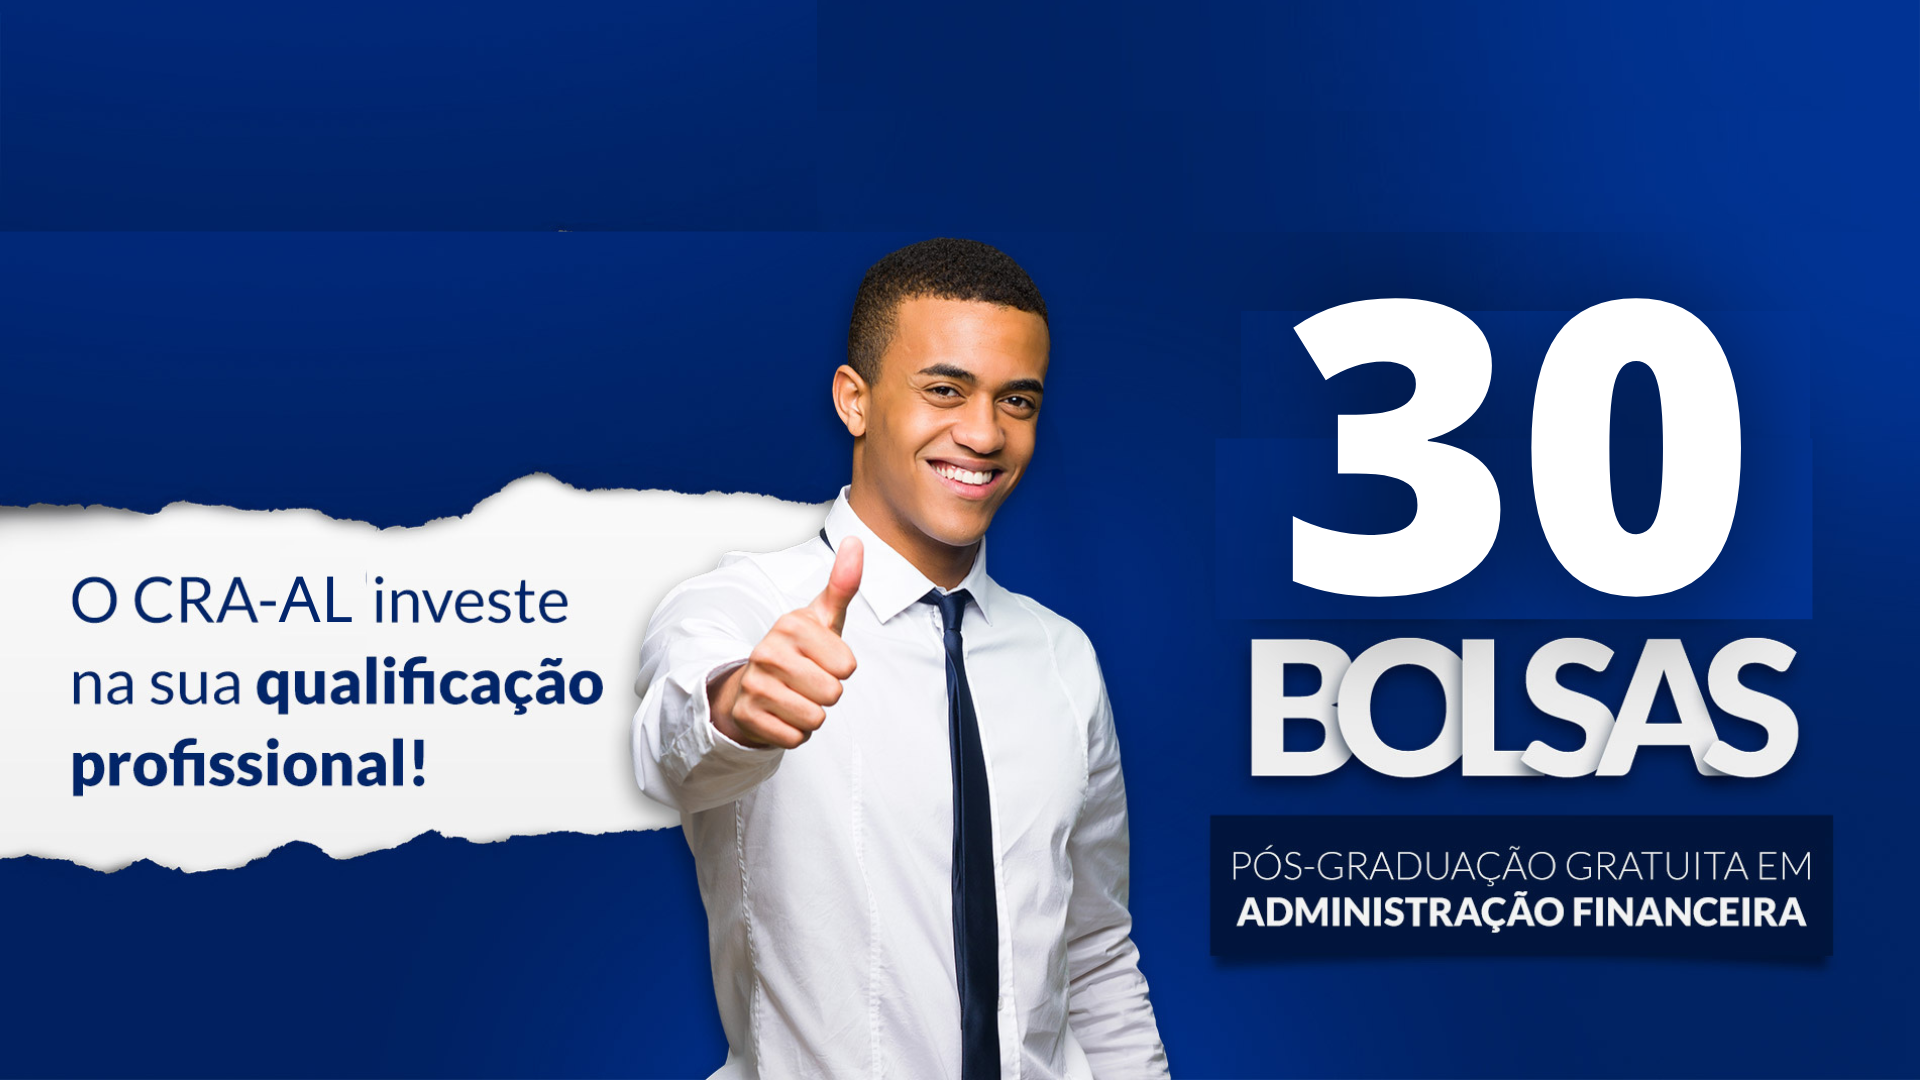 You are currently viewing Sorteio de 30 bolsas de pós-graduação em administração financeira